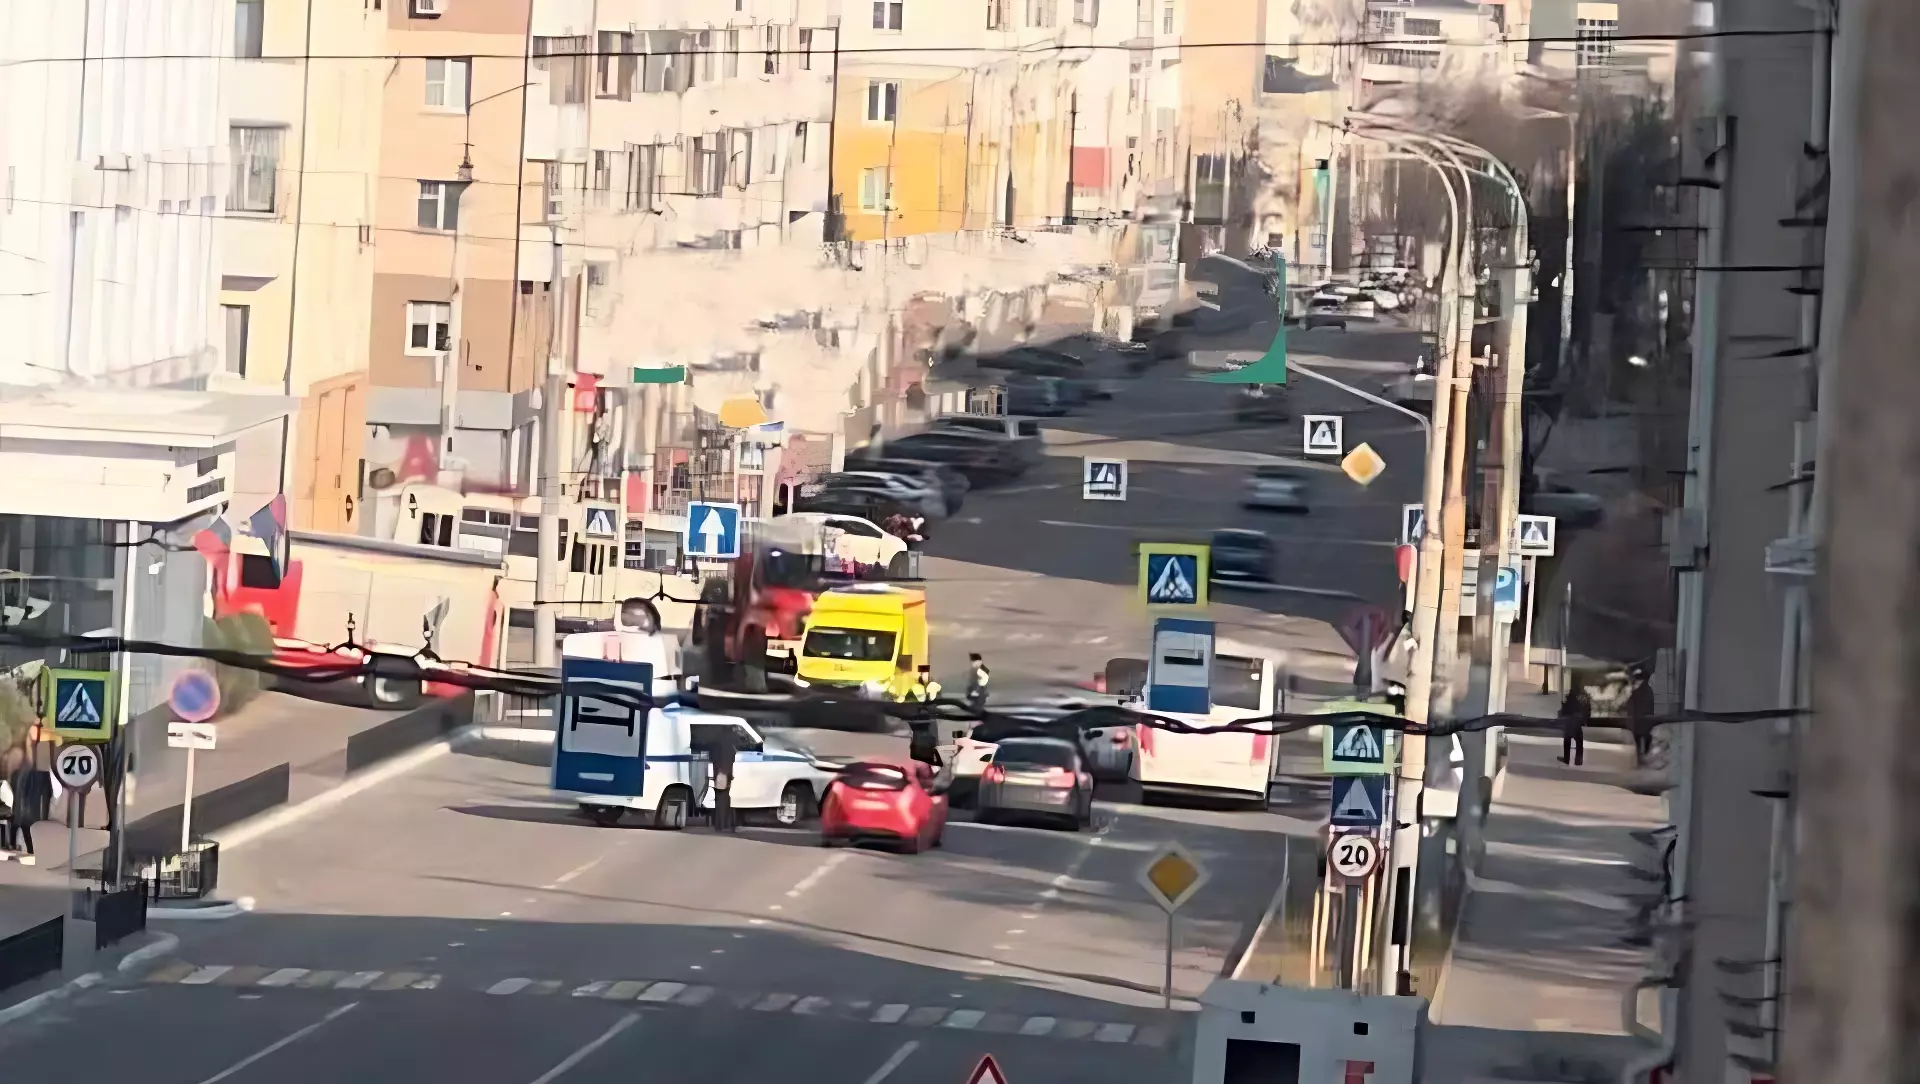 Белгород вновь атакован: очевидцы сообщают о взрыве у здания УМВД